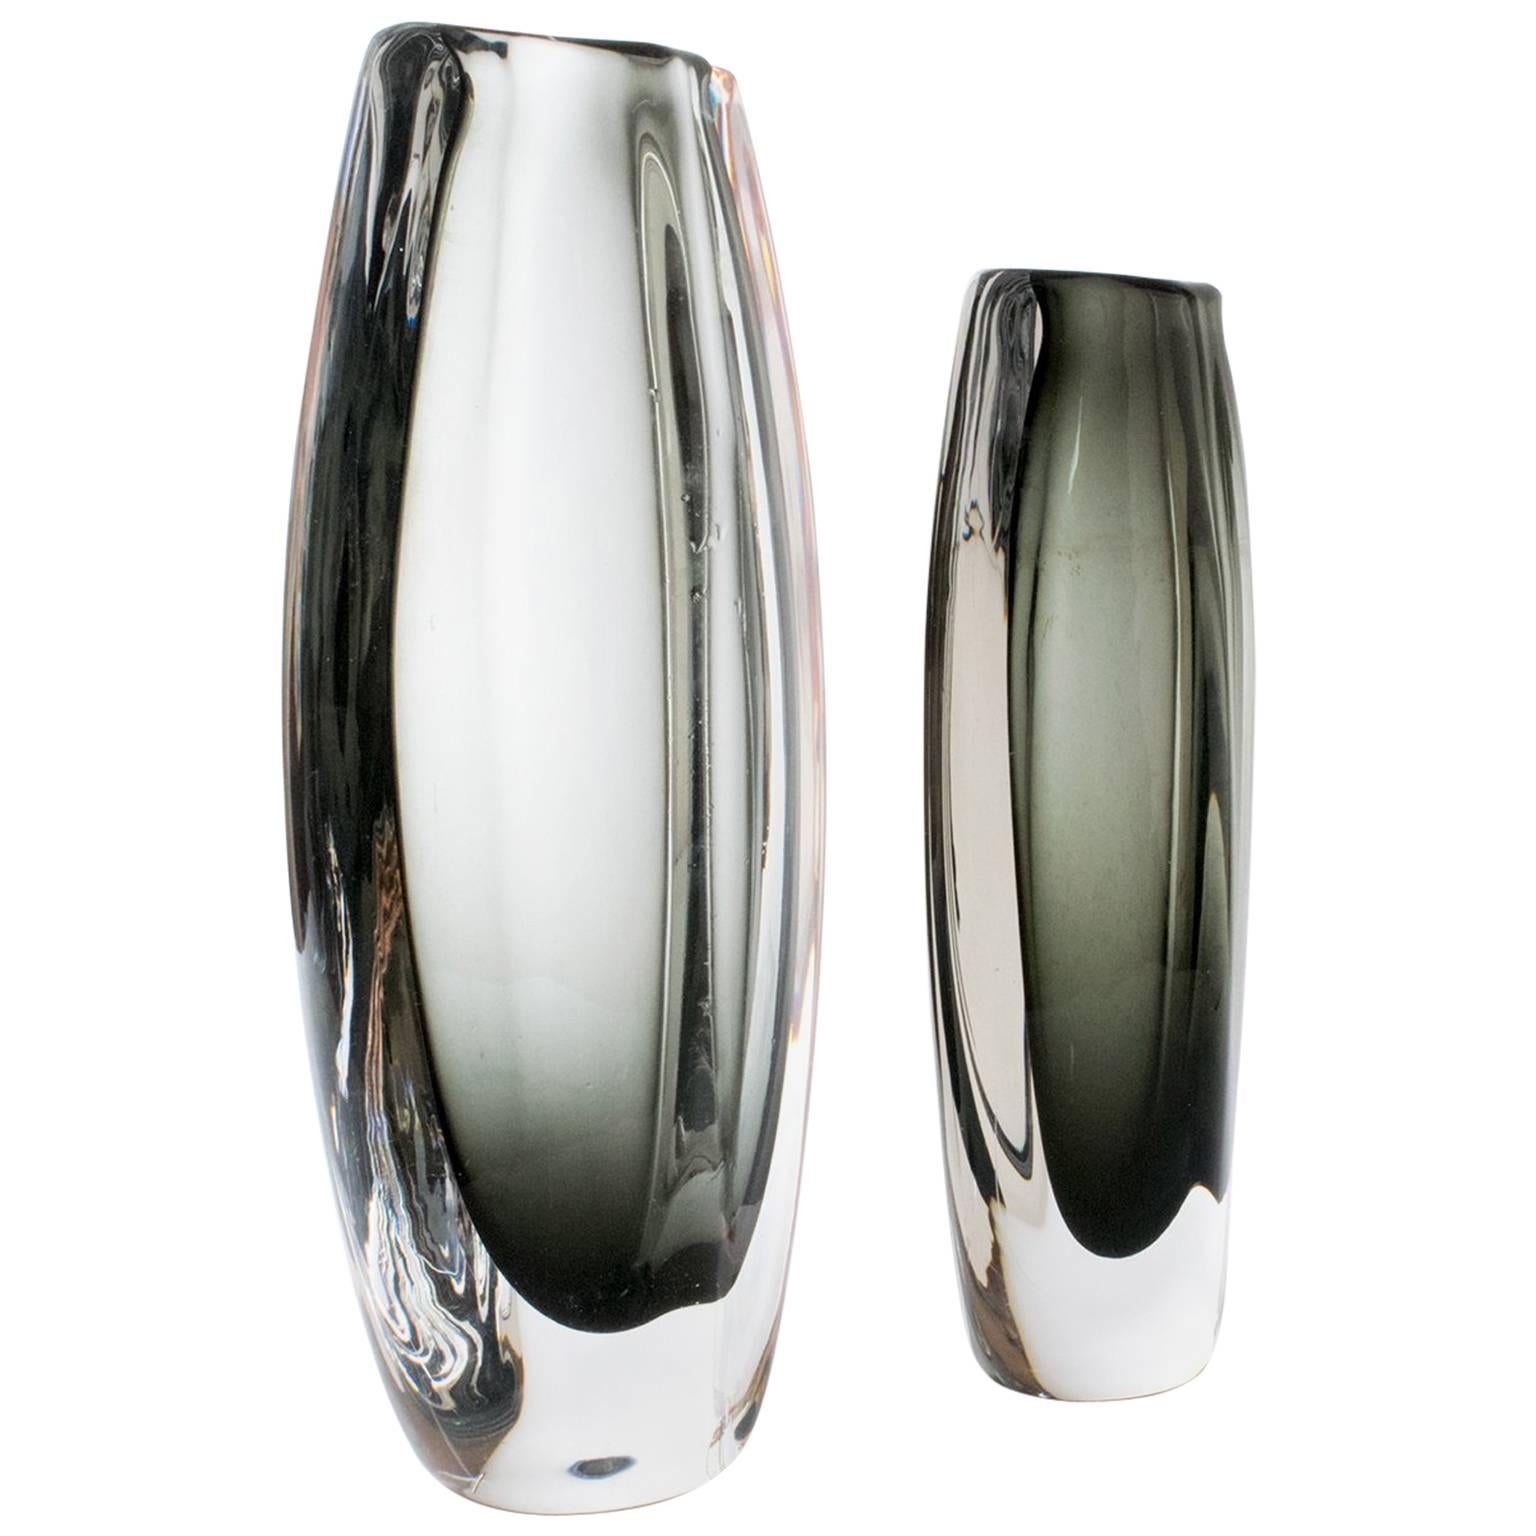 Two Nils Landberg Glass Vases, Orrefors, Sweden, Scandinavian Modern